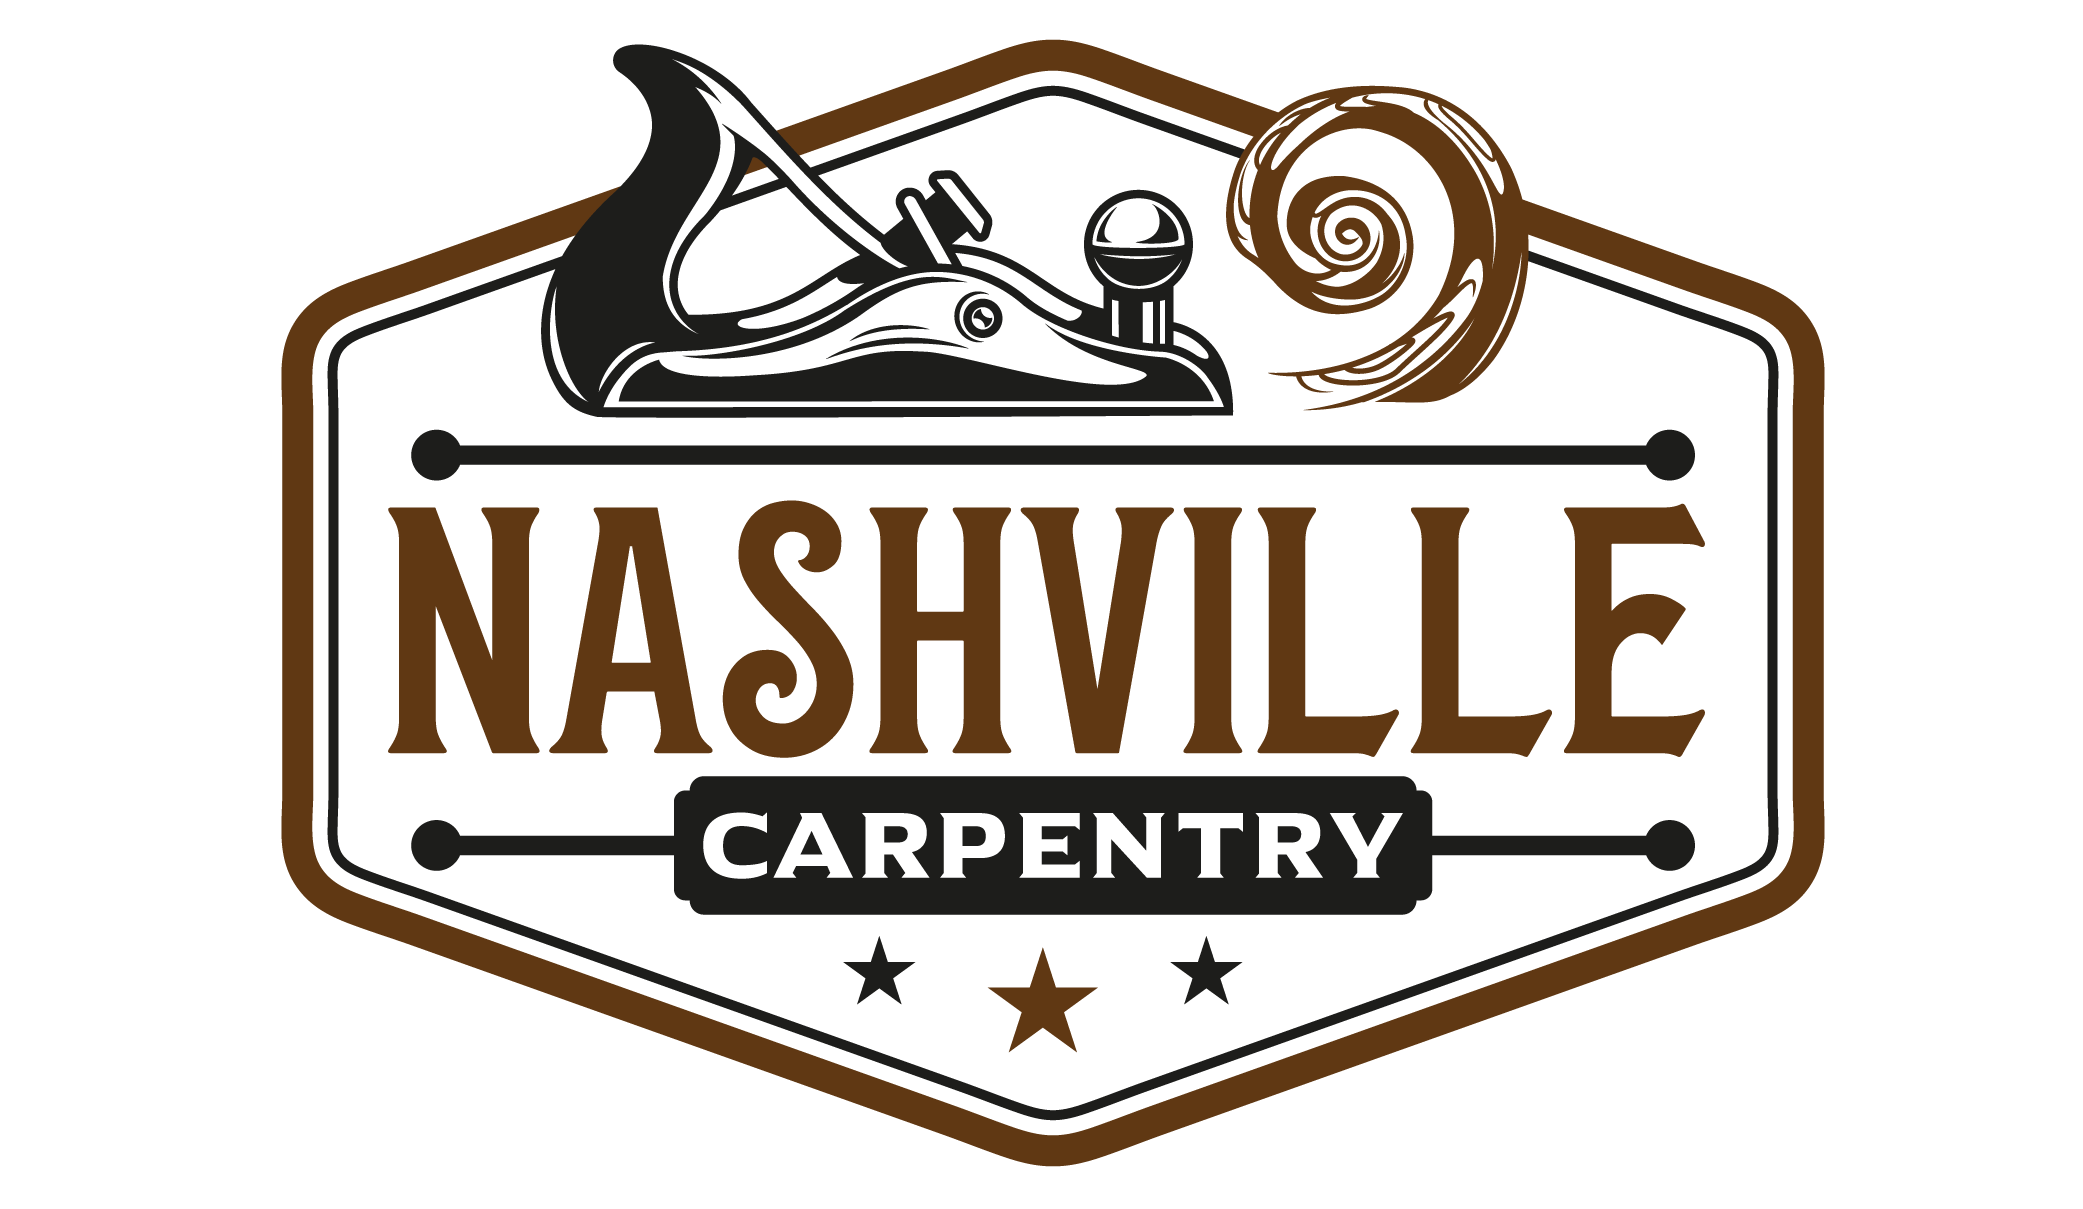 Nashville Carpentry Carpenter Services in Nashville